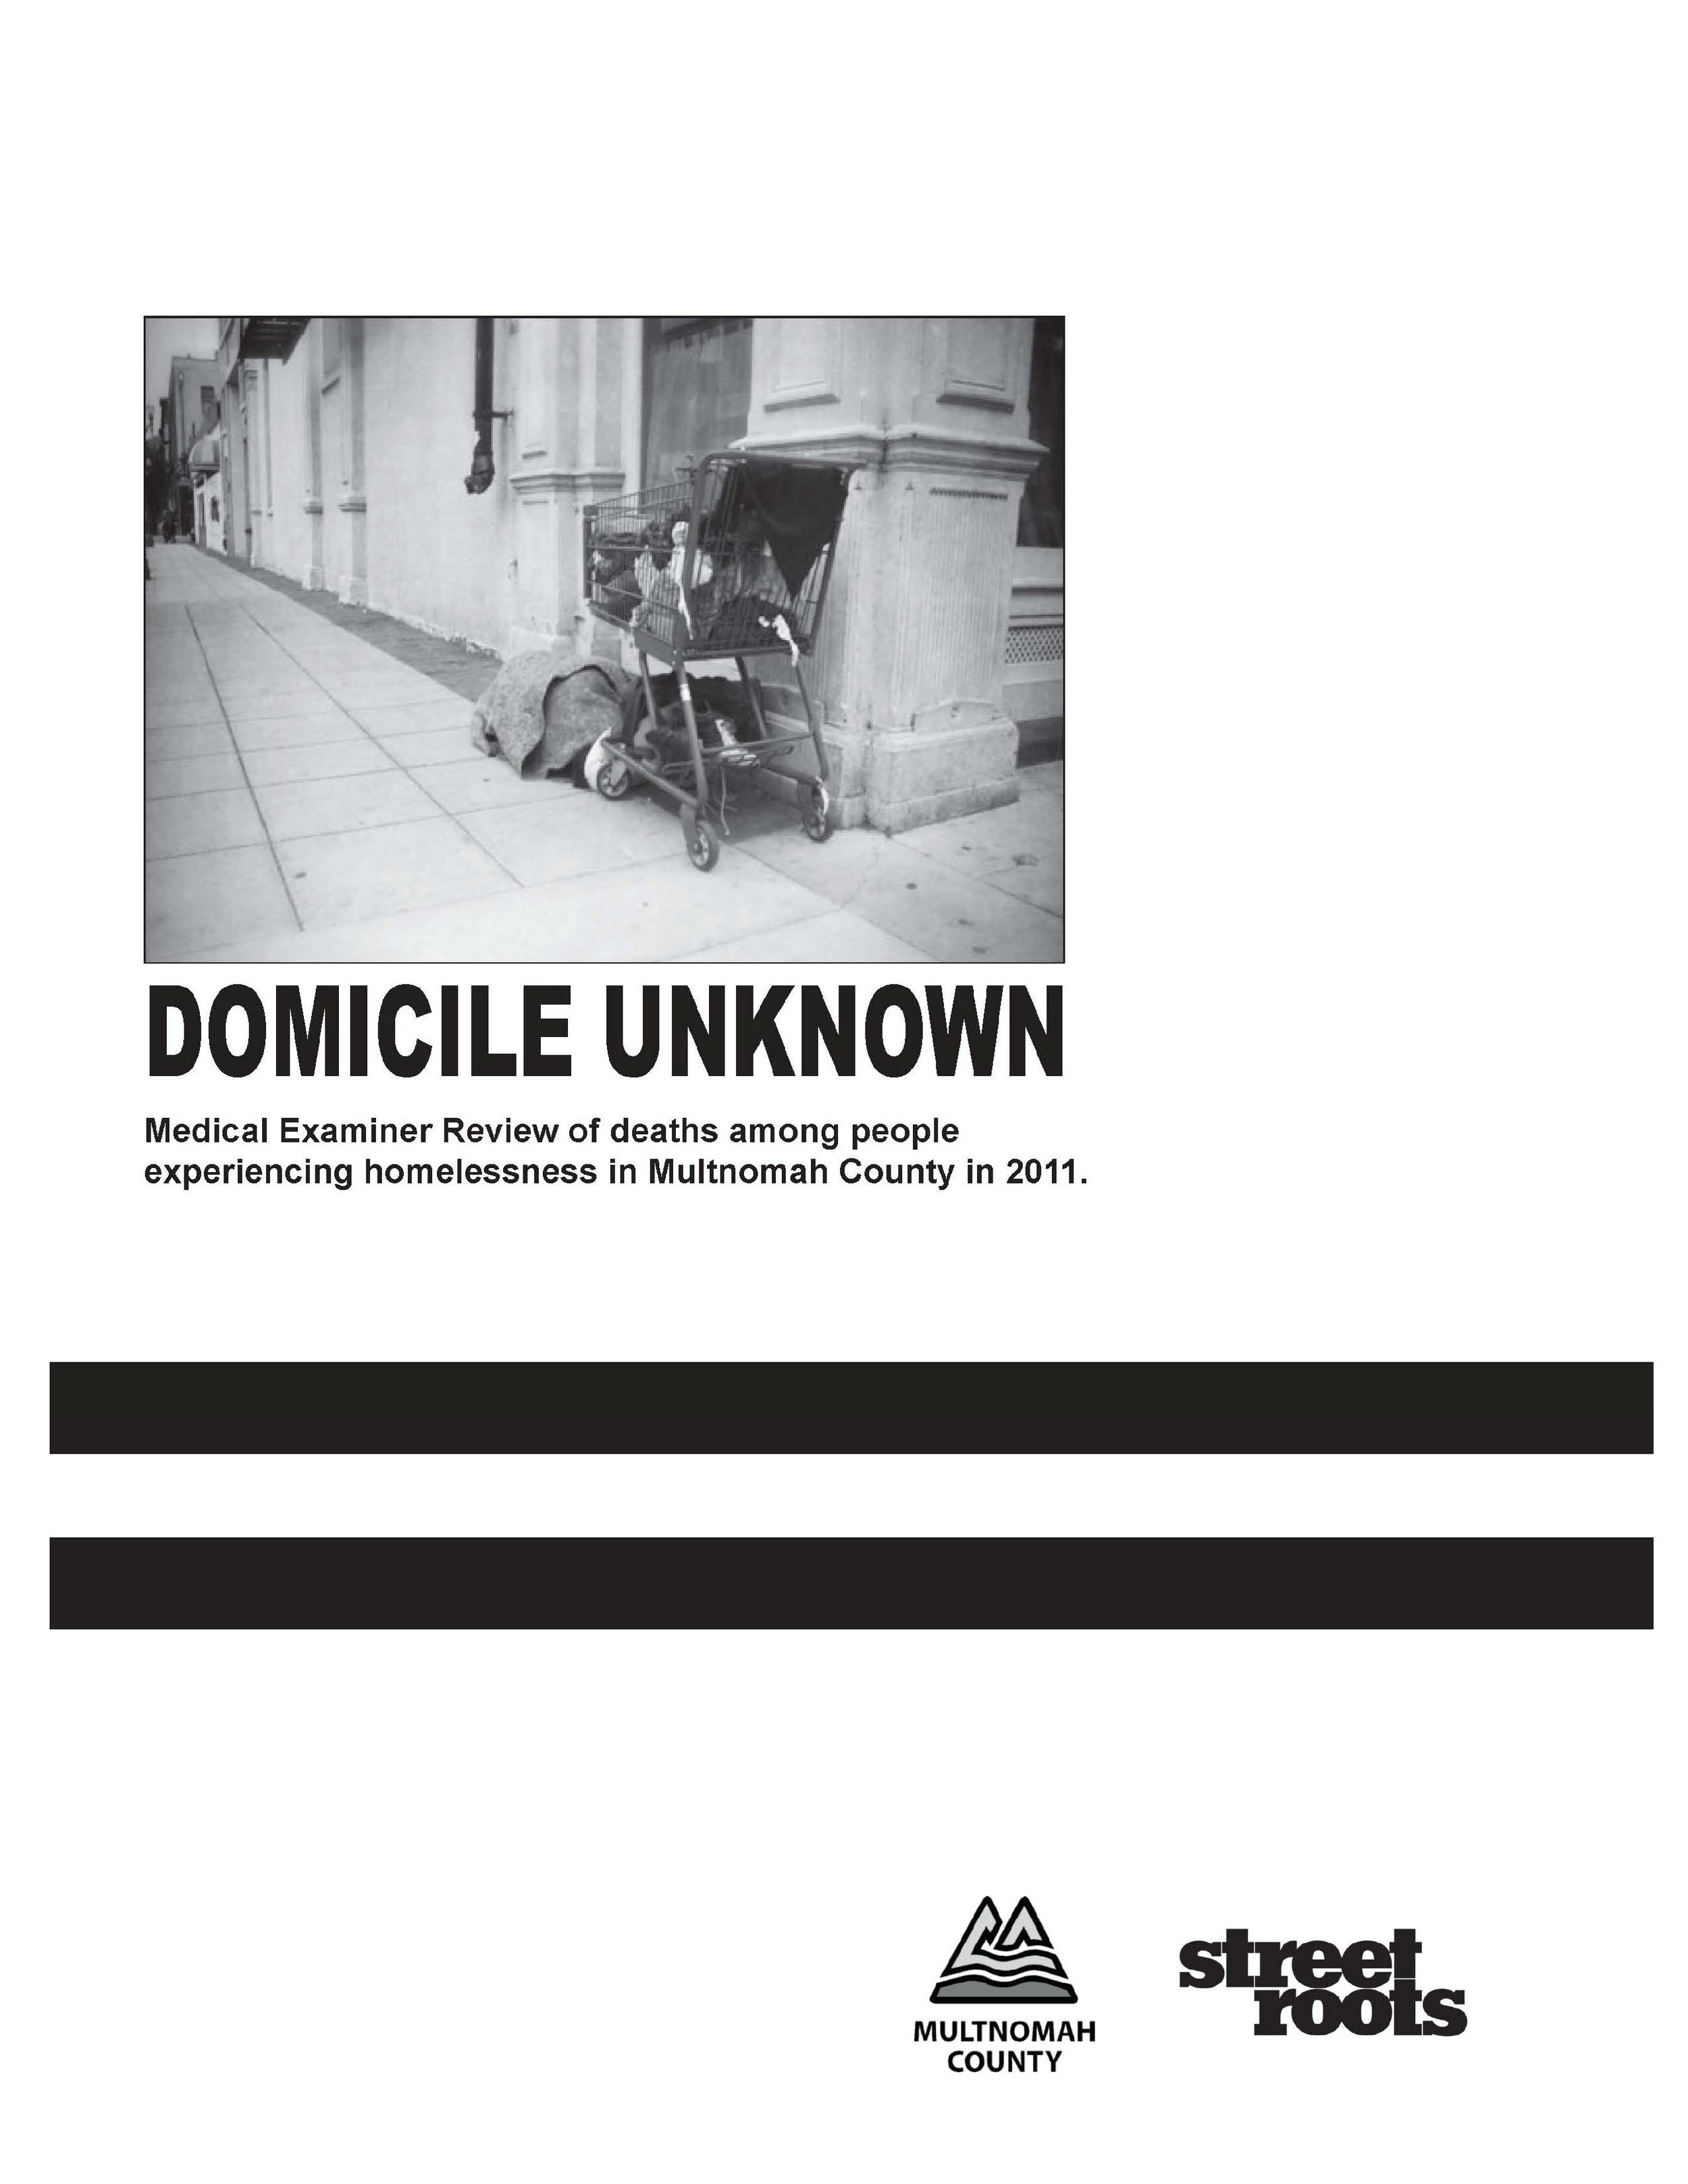 2011 Domicile Unknown Report